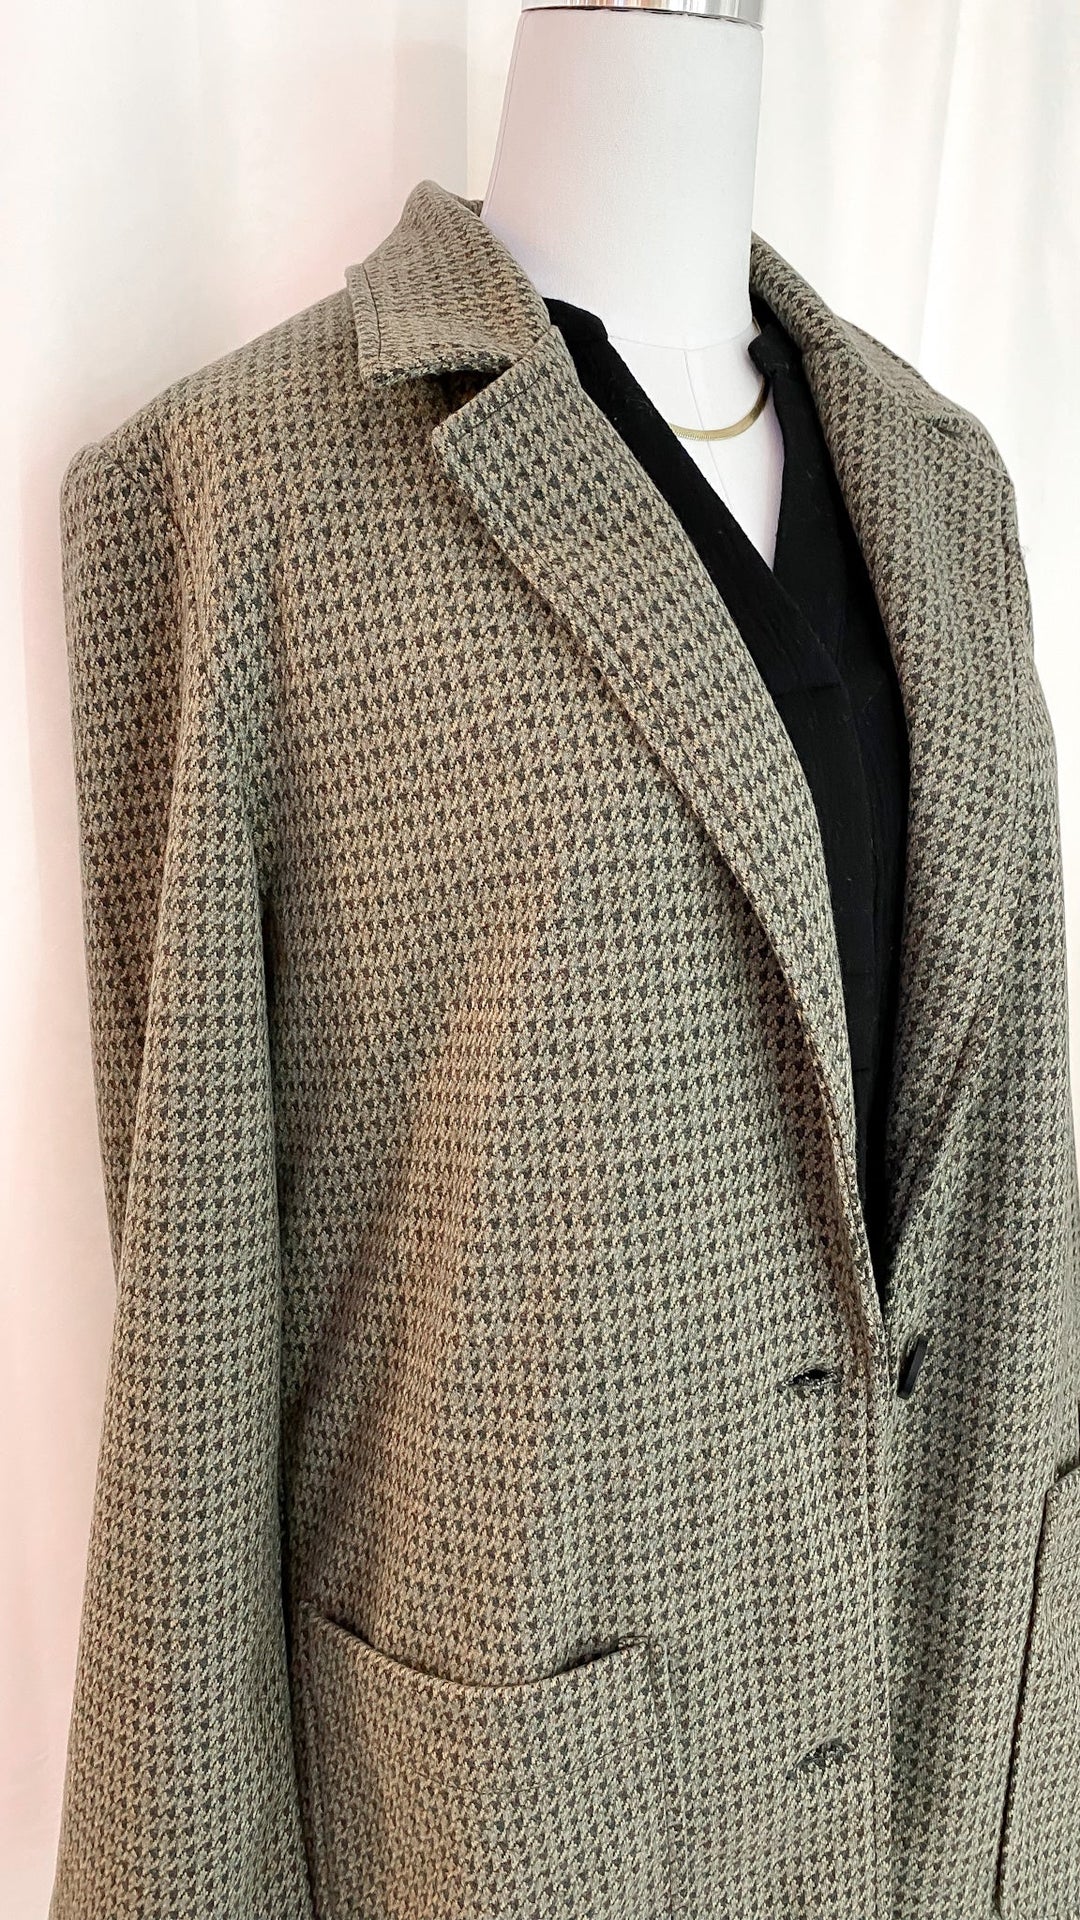 Boss Lady Houndstooth Check Coat - Coats & Jackets